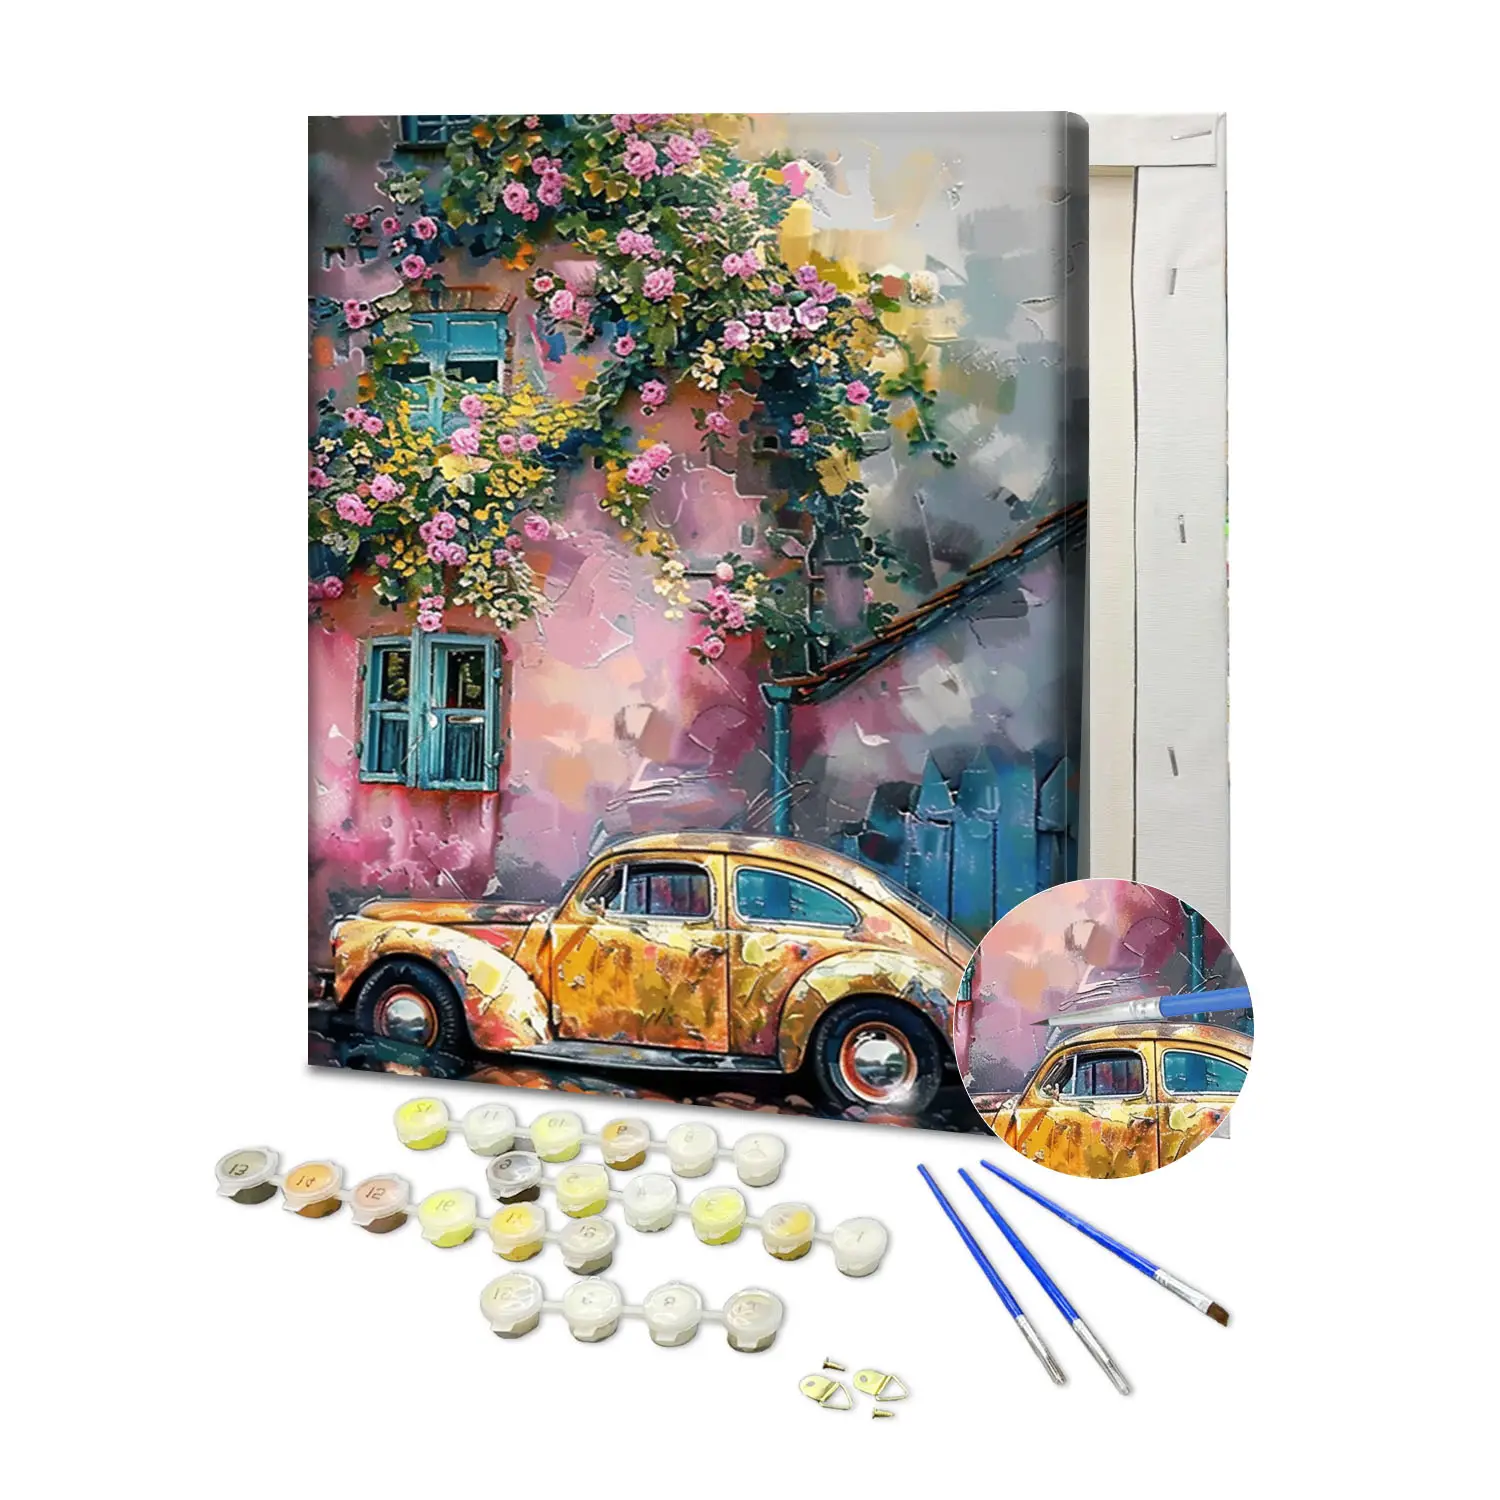 Neues Design individuelles Malen nach Zahlen Kits gelbes Auto am Haus parkt DIY-Malerei nach Zahlen Leinwand Acryl Ölgemälde